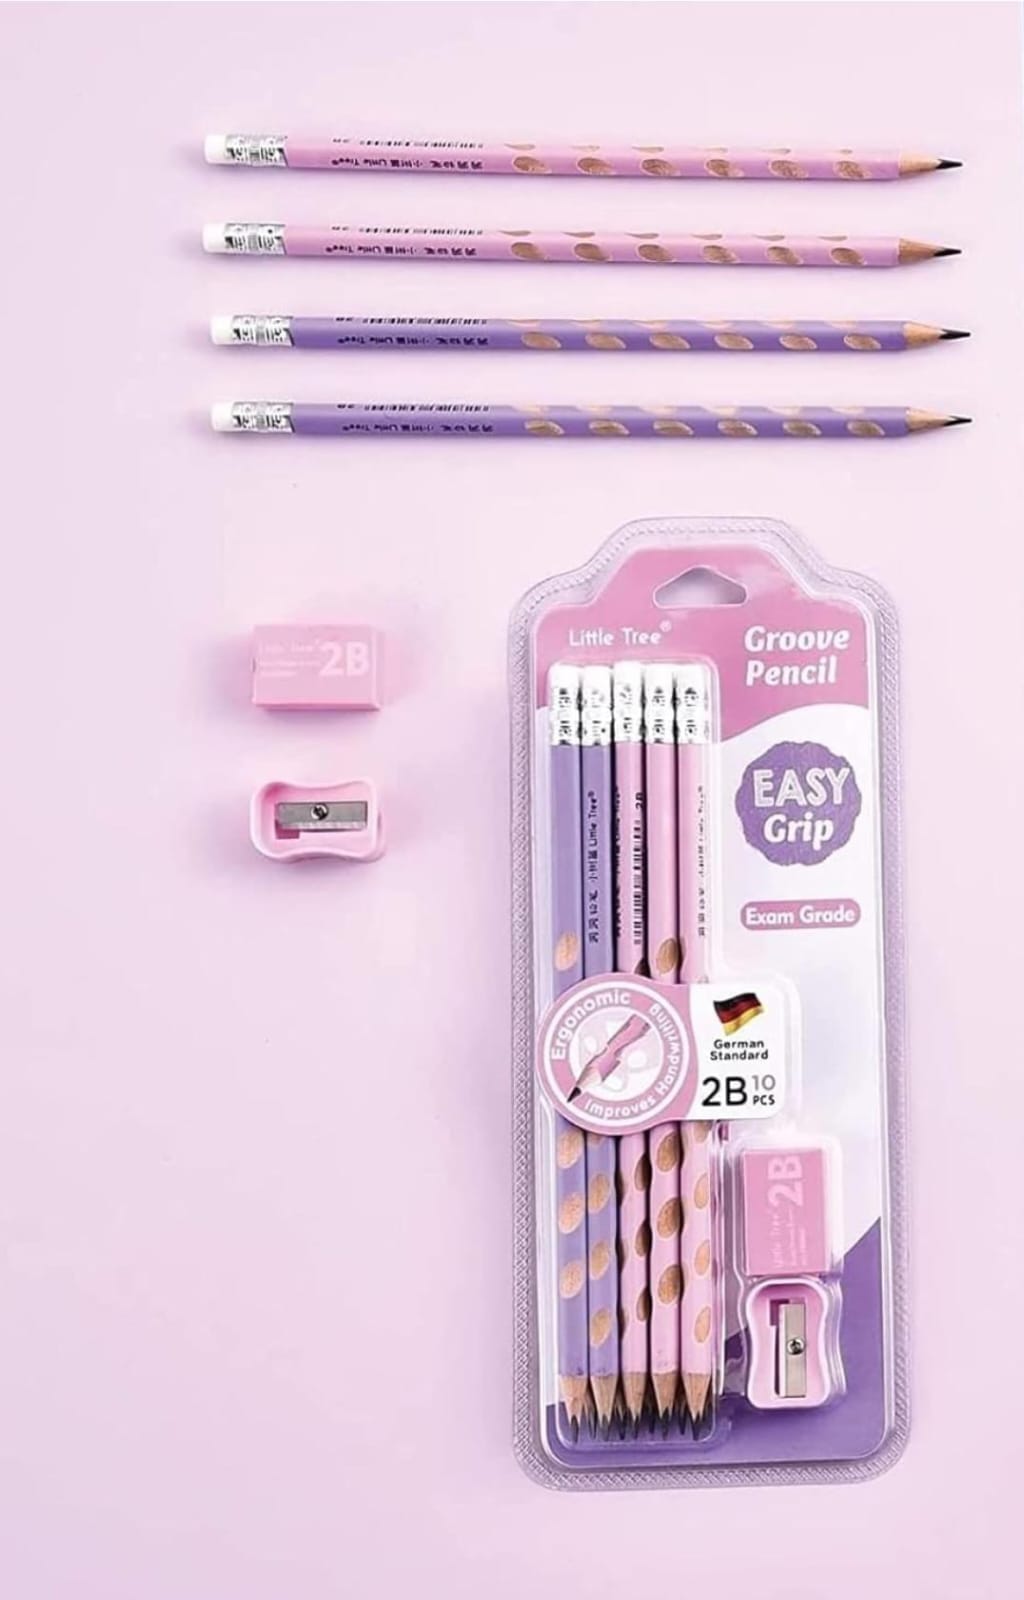 2B Pencils, Triangular Soft Texture 60pcs Drawing Pencils Pink